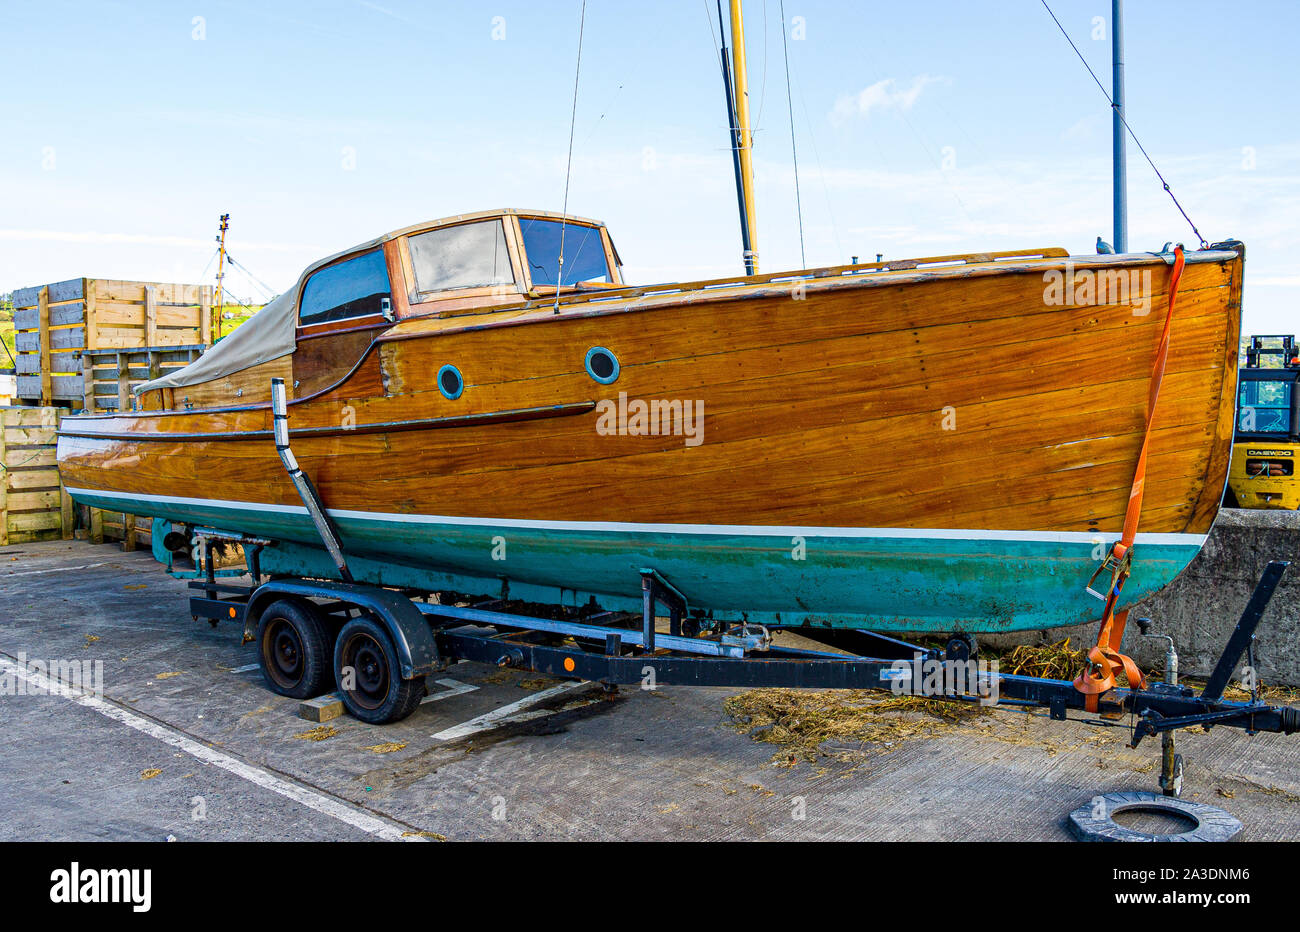 Entarimado de madera barnizada de madera carvel construyó el casco de la embarcación Foto de stock